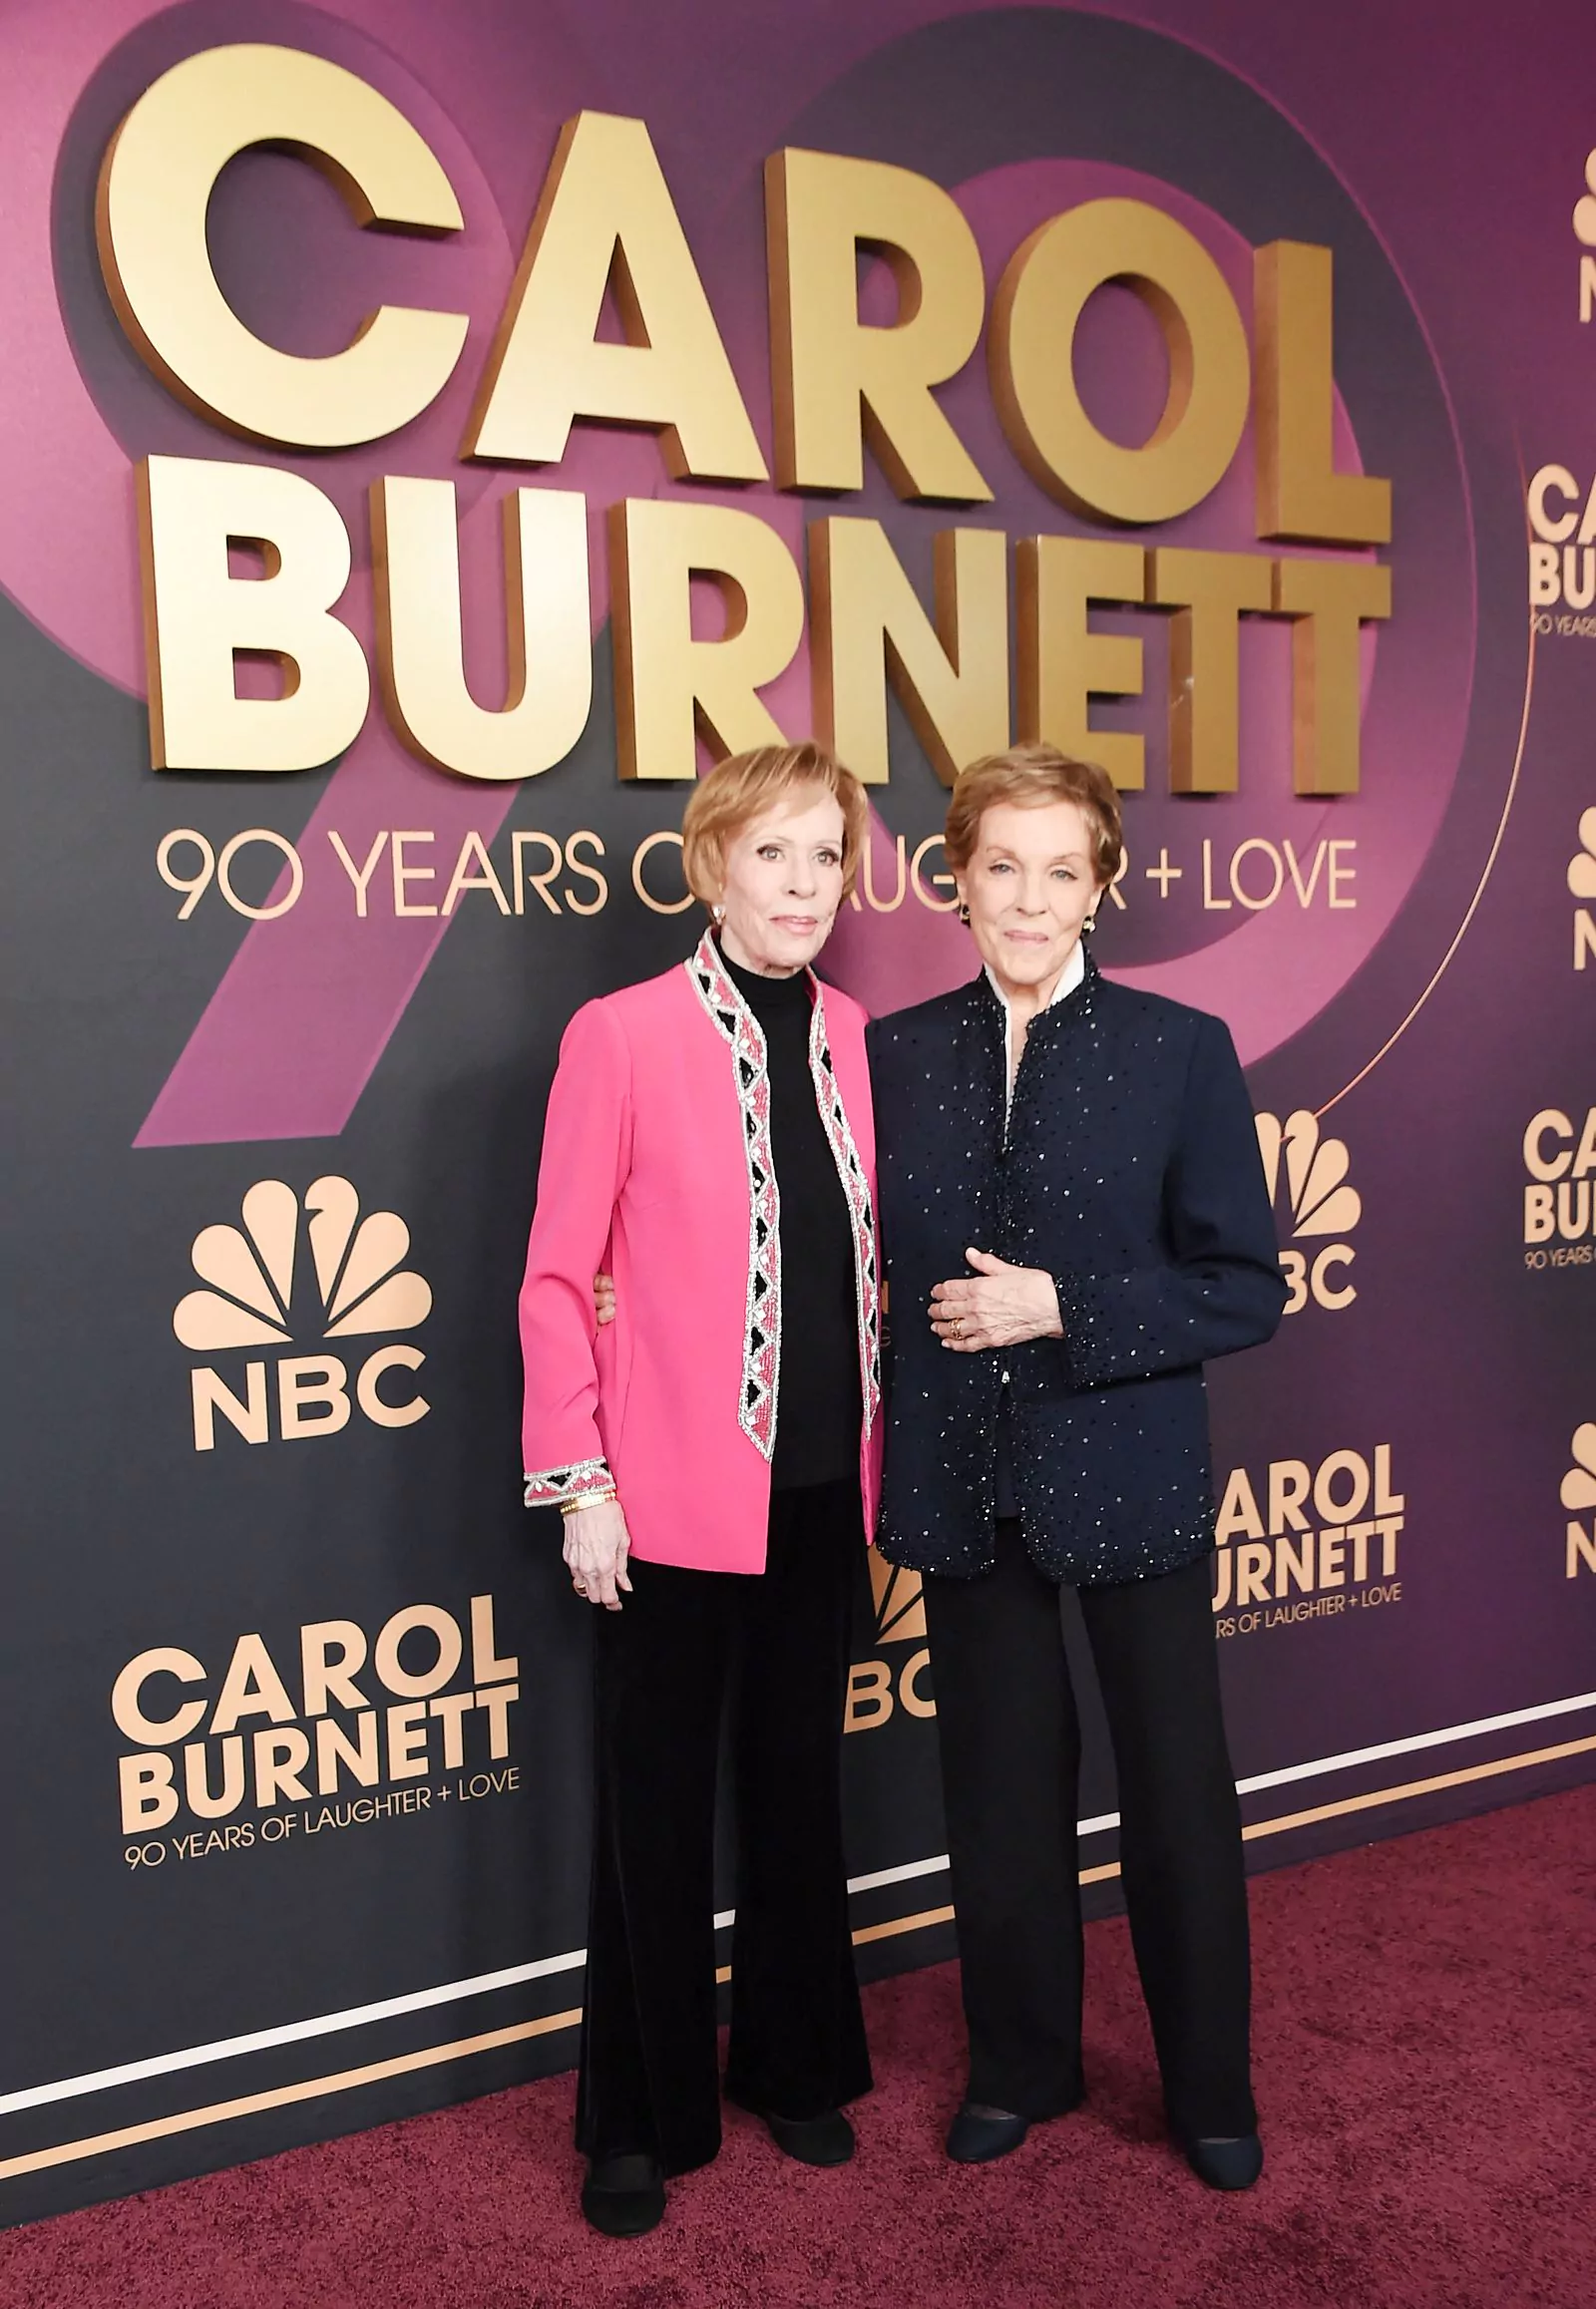 Кэрол Бернетт и Джули Эндрюс на красной дорожке вечера в честь 90-летия Кэрол Бернетт в Голливуде, 2 марта 2023 г.